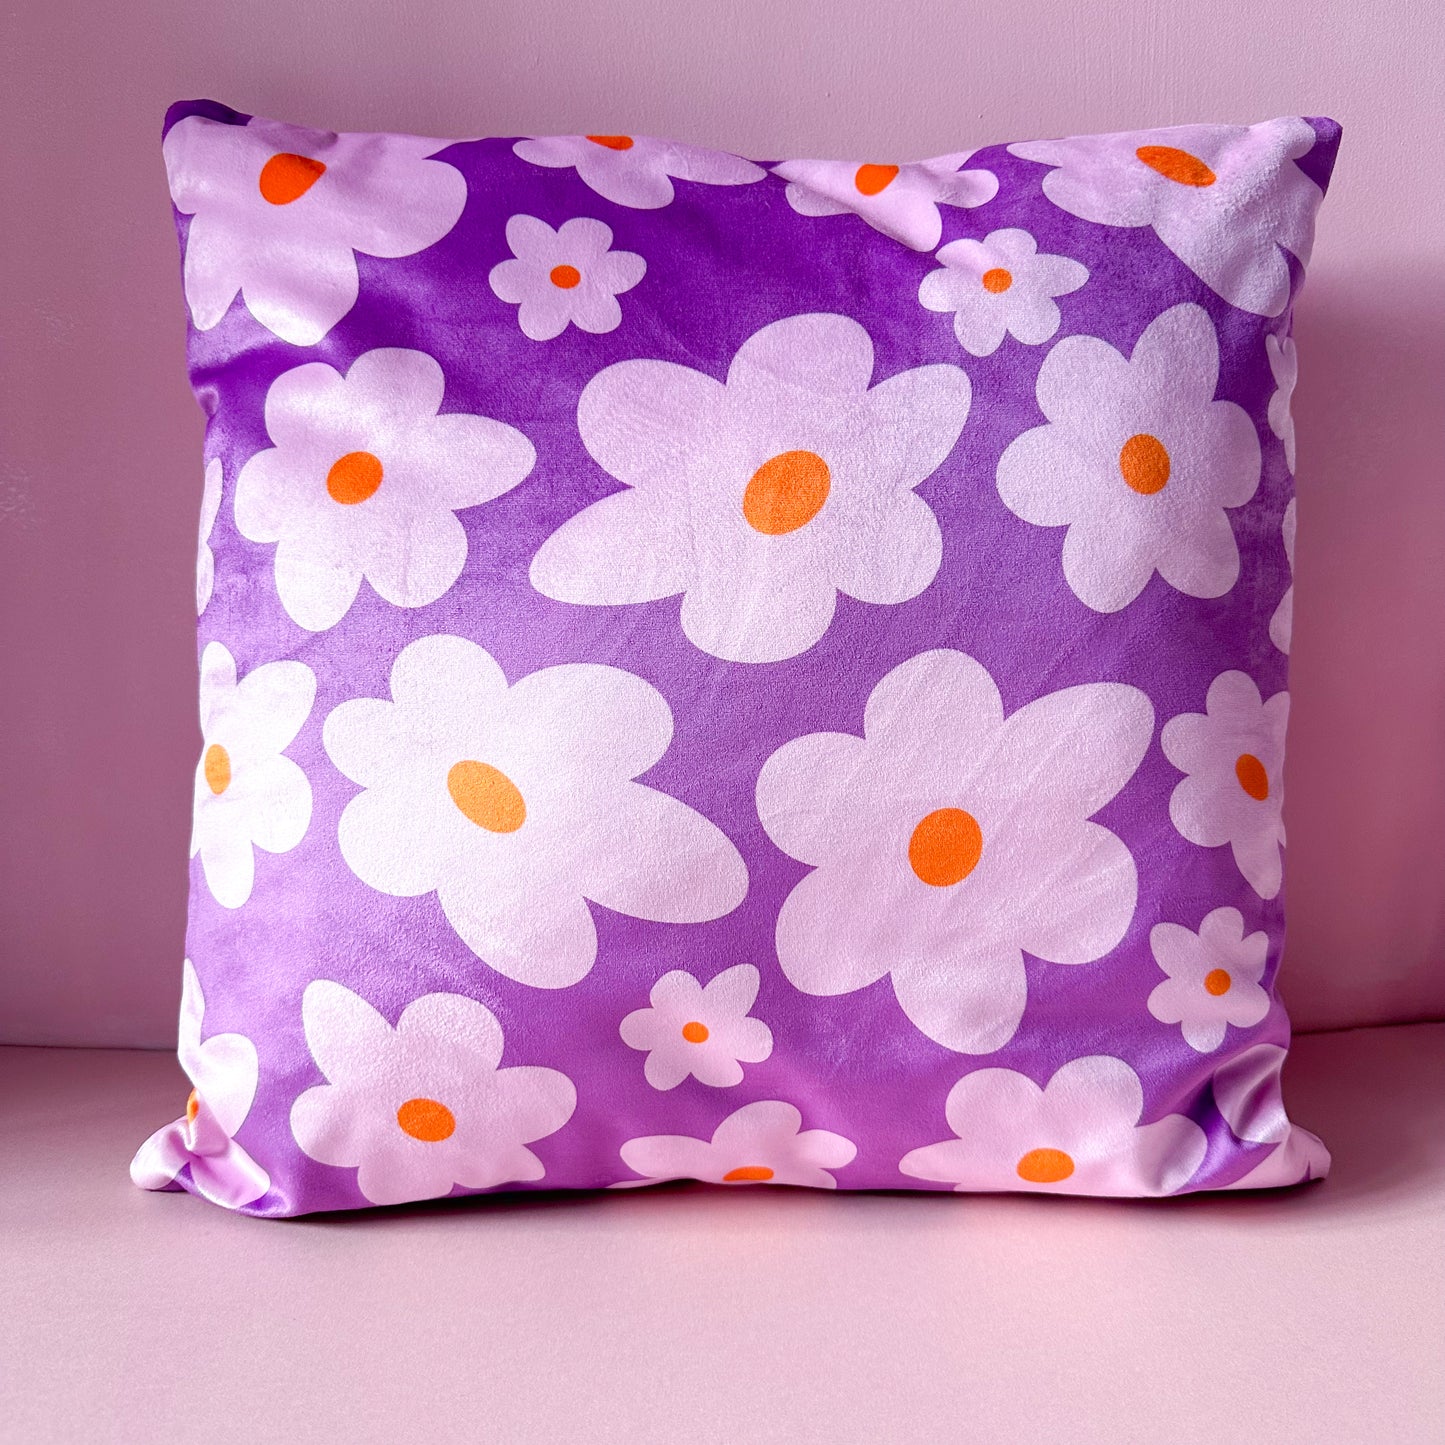 Velvet daisy cushion in purple, girls bedroom living room modern design 